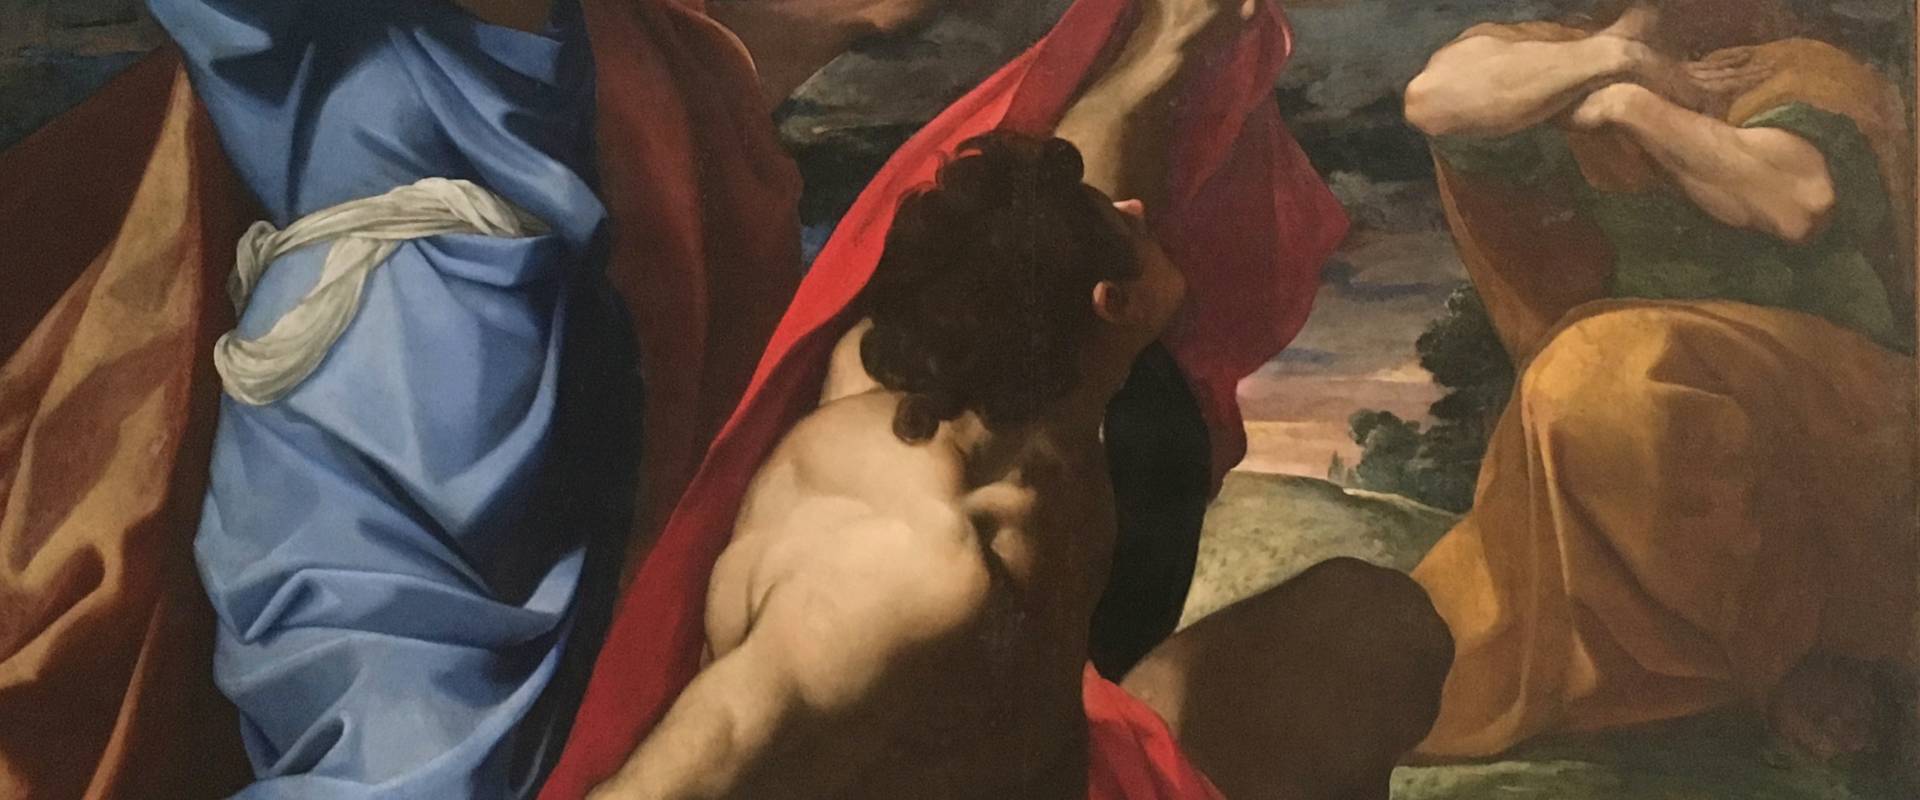 Trasfigurazione di Cristo Carracci Ludovico foto di Waltre manni